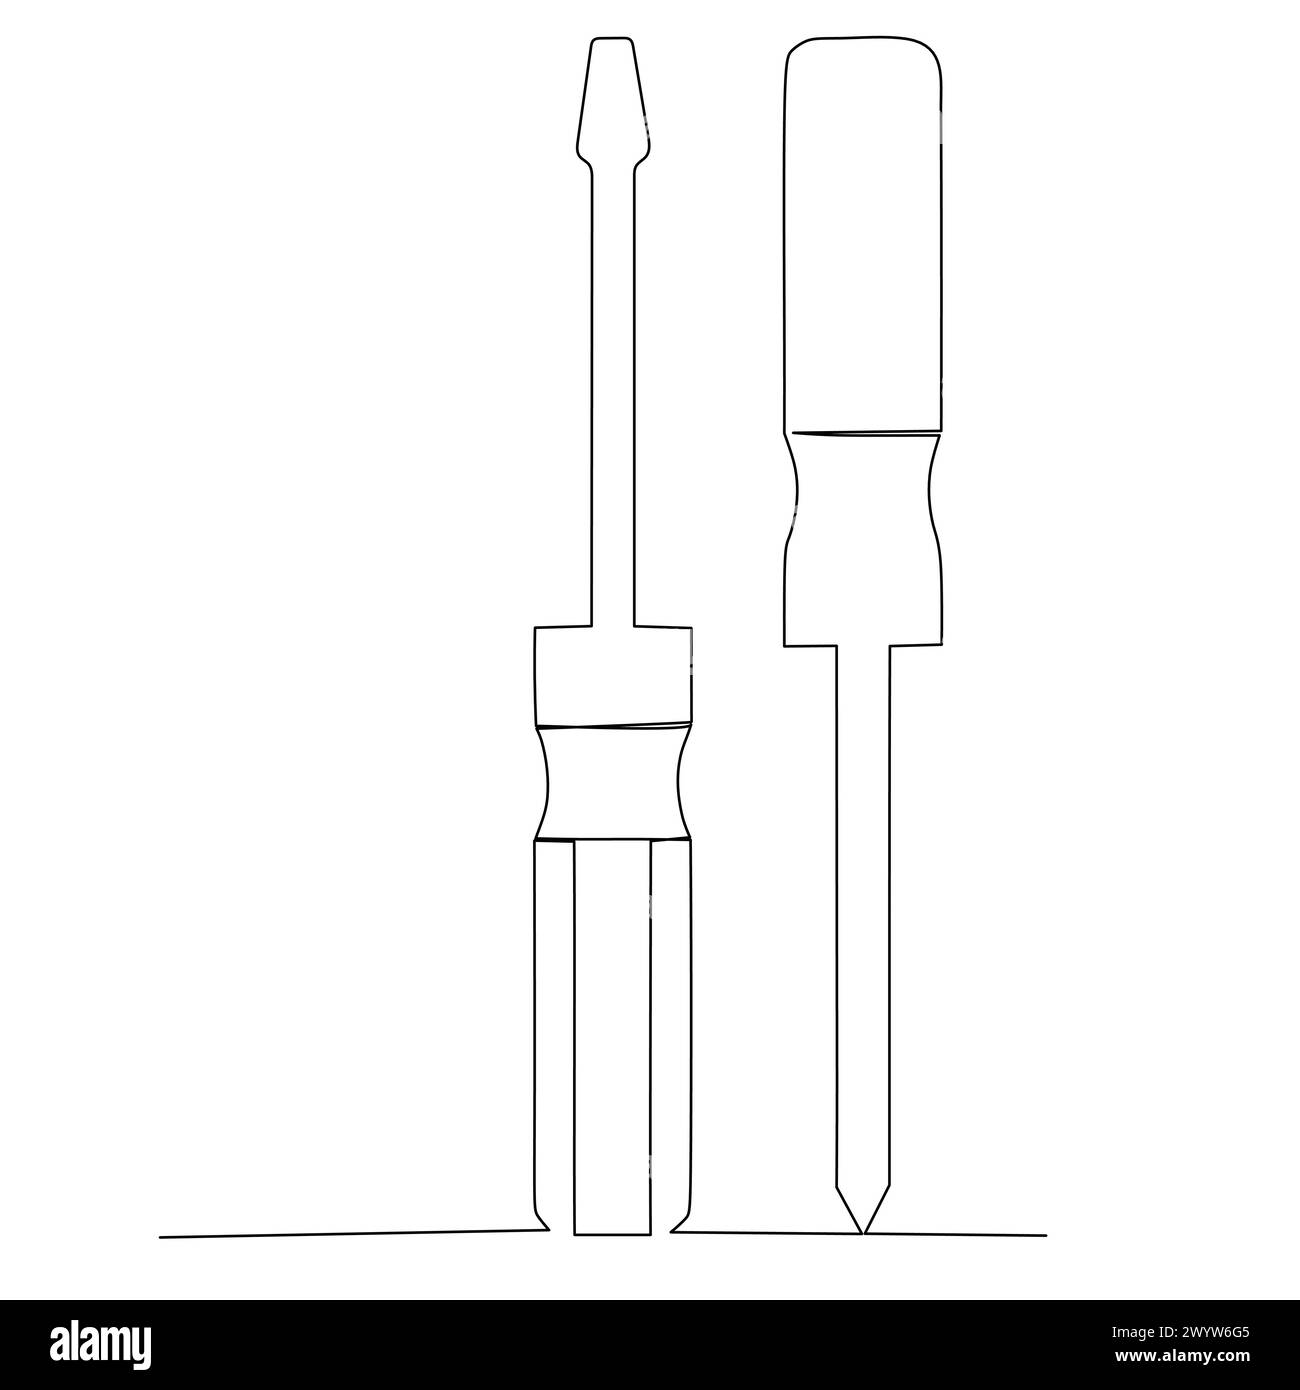 Ein Paar Werkzeuge. Flachkopf und Kreuzschlitzschraubendreher. Einfaches, handgezeichnetes Vektorentwurzelelement. Illustration für Industrie und Bauwesen Stock Vektor